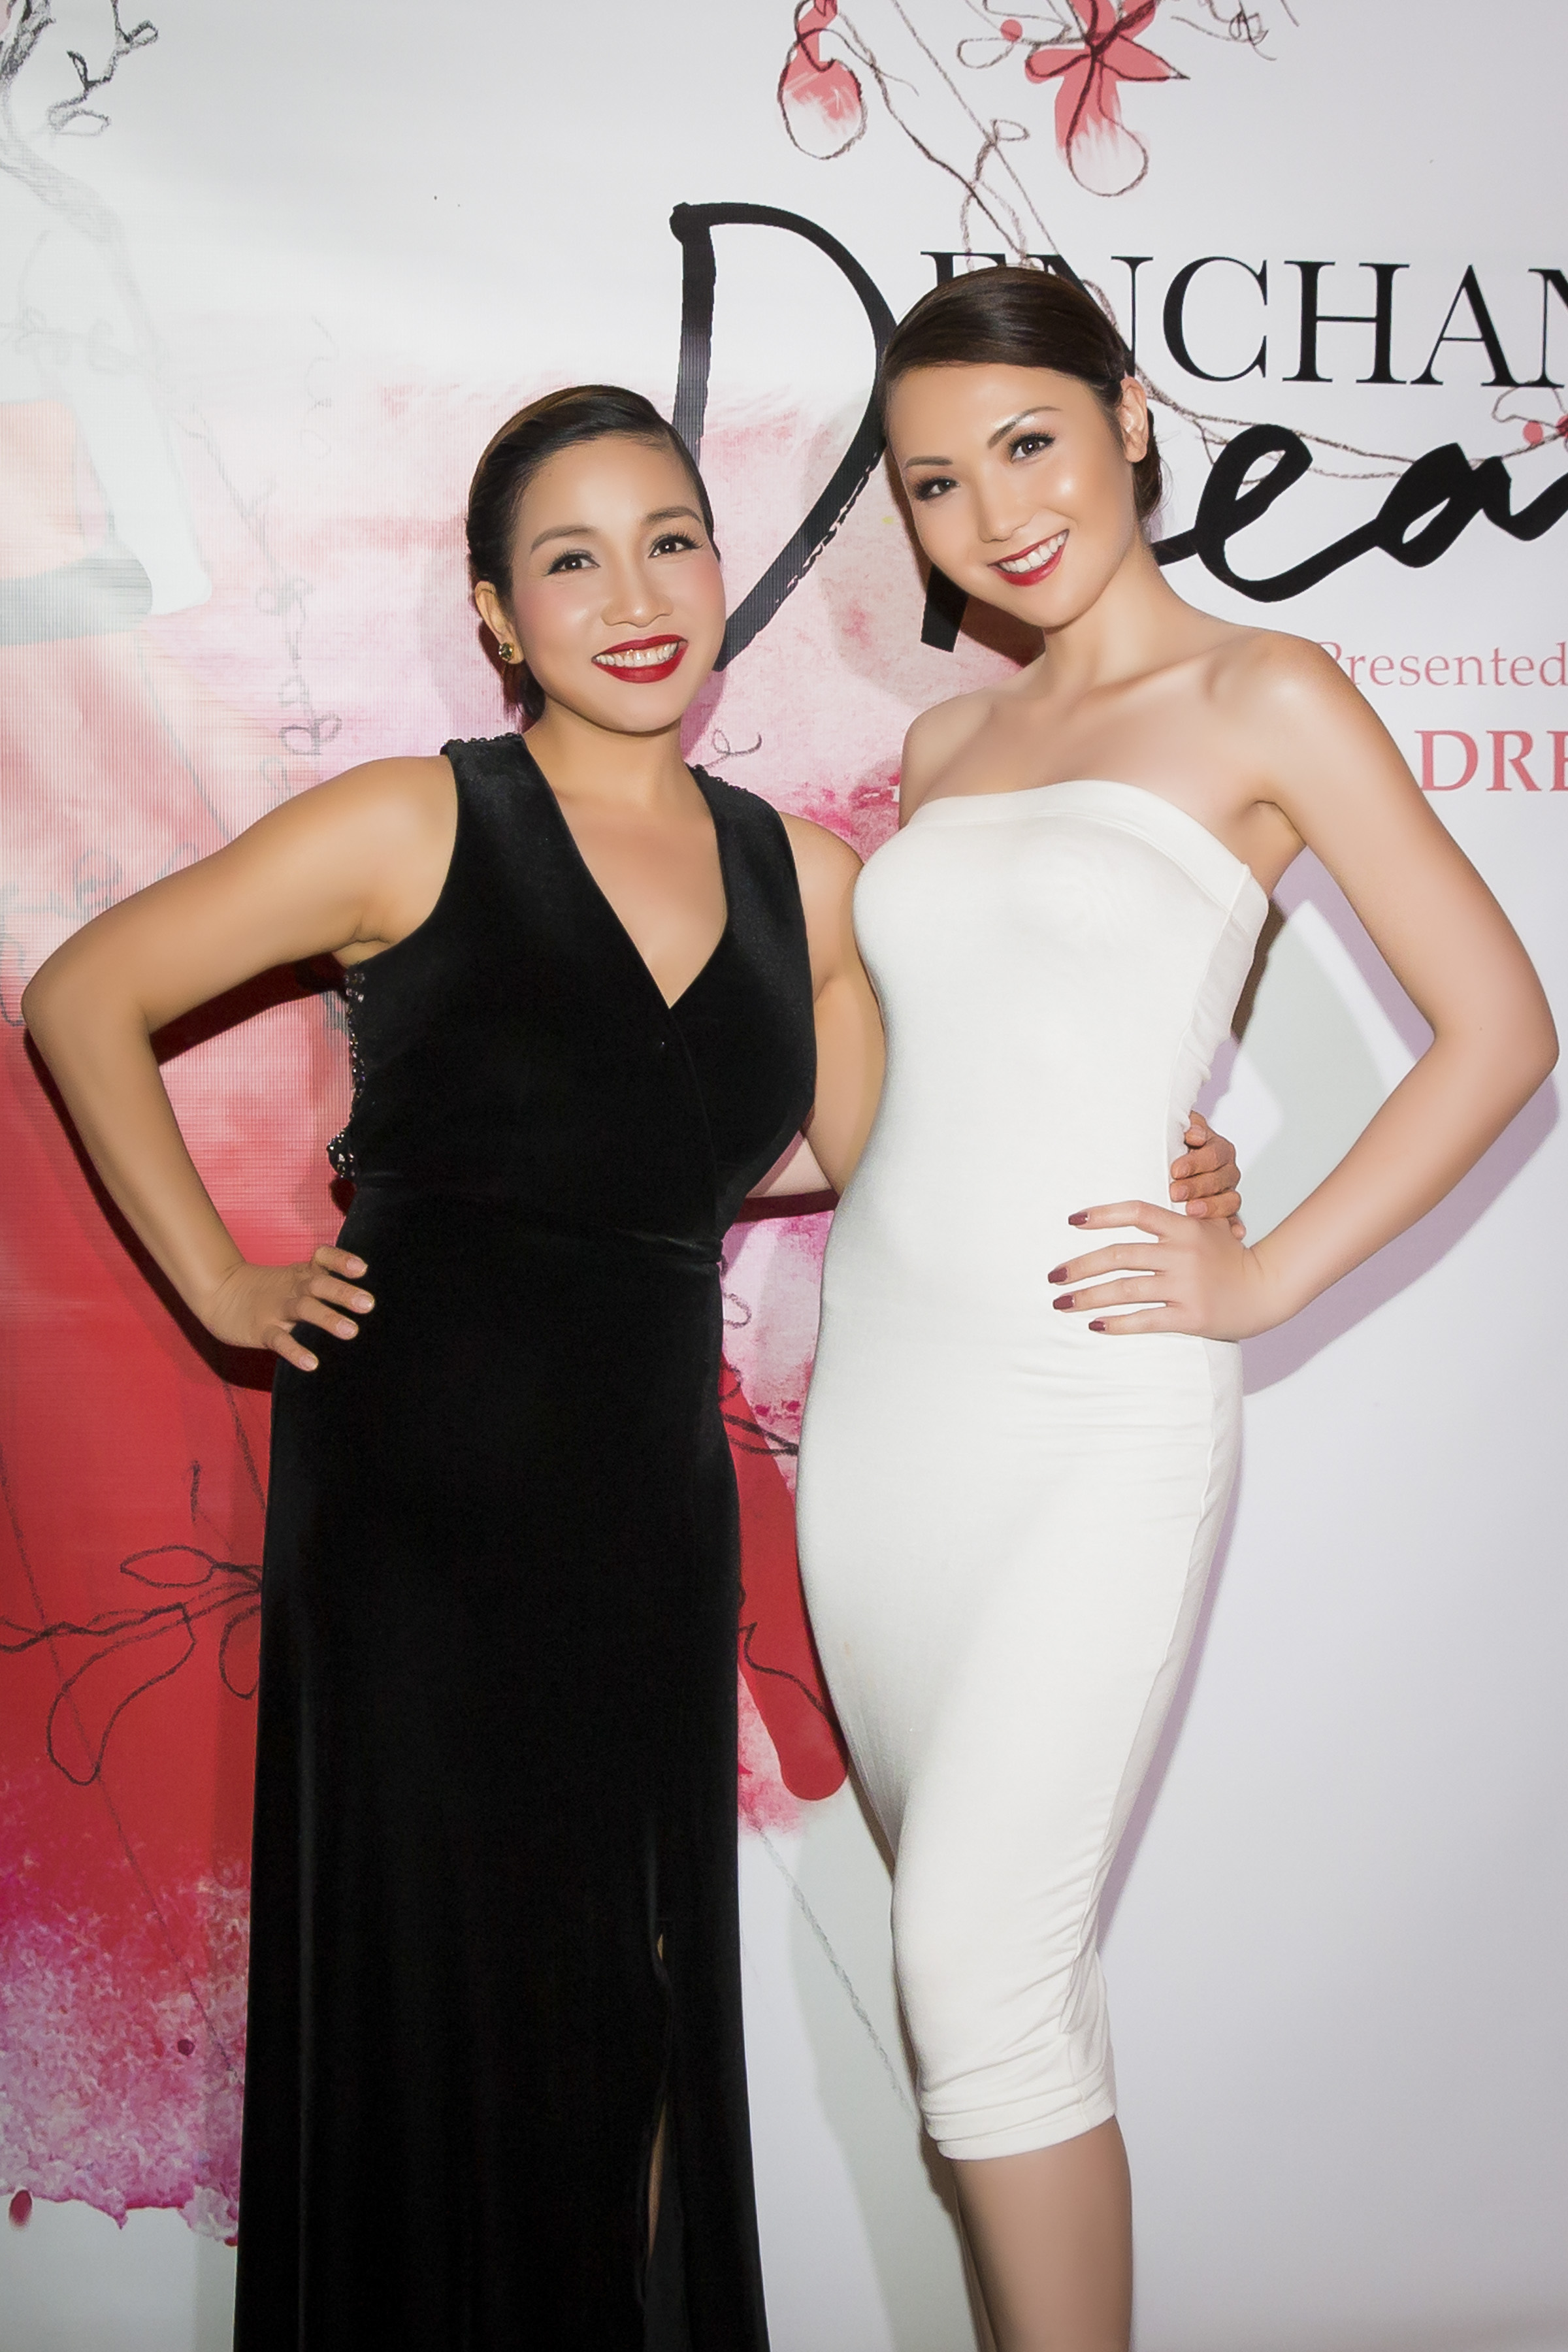 Con gái Mỹ Linh tự tin đọ dáng bên Hoa hậu Jennifer Chung - ảnh 1